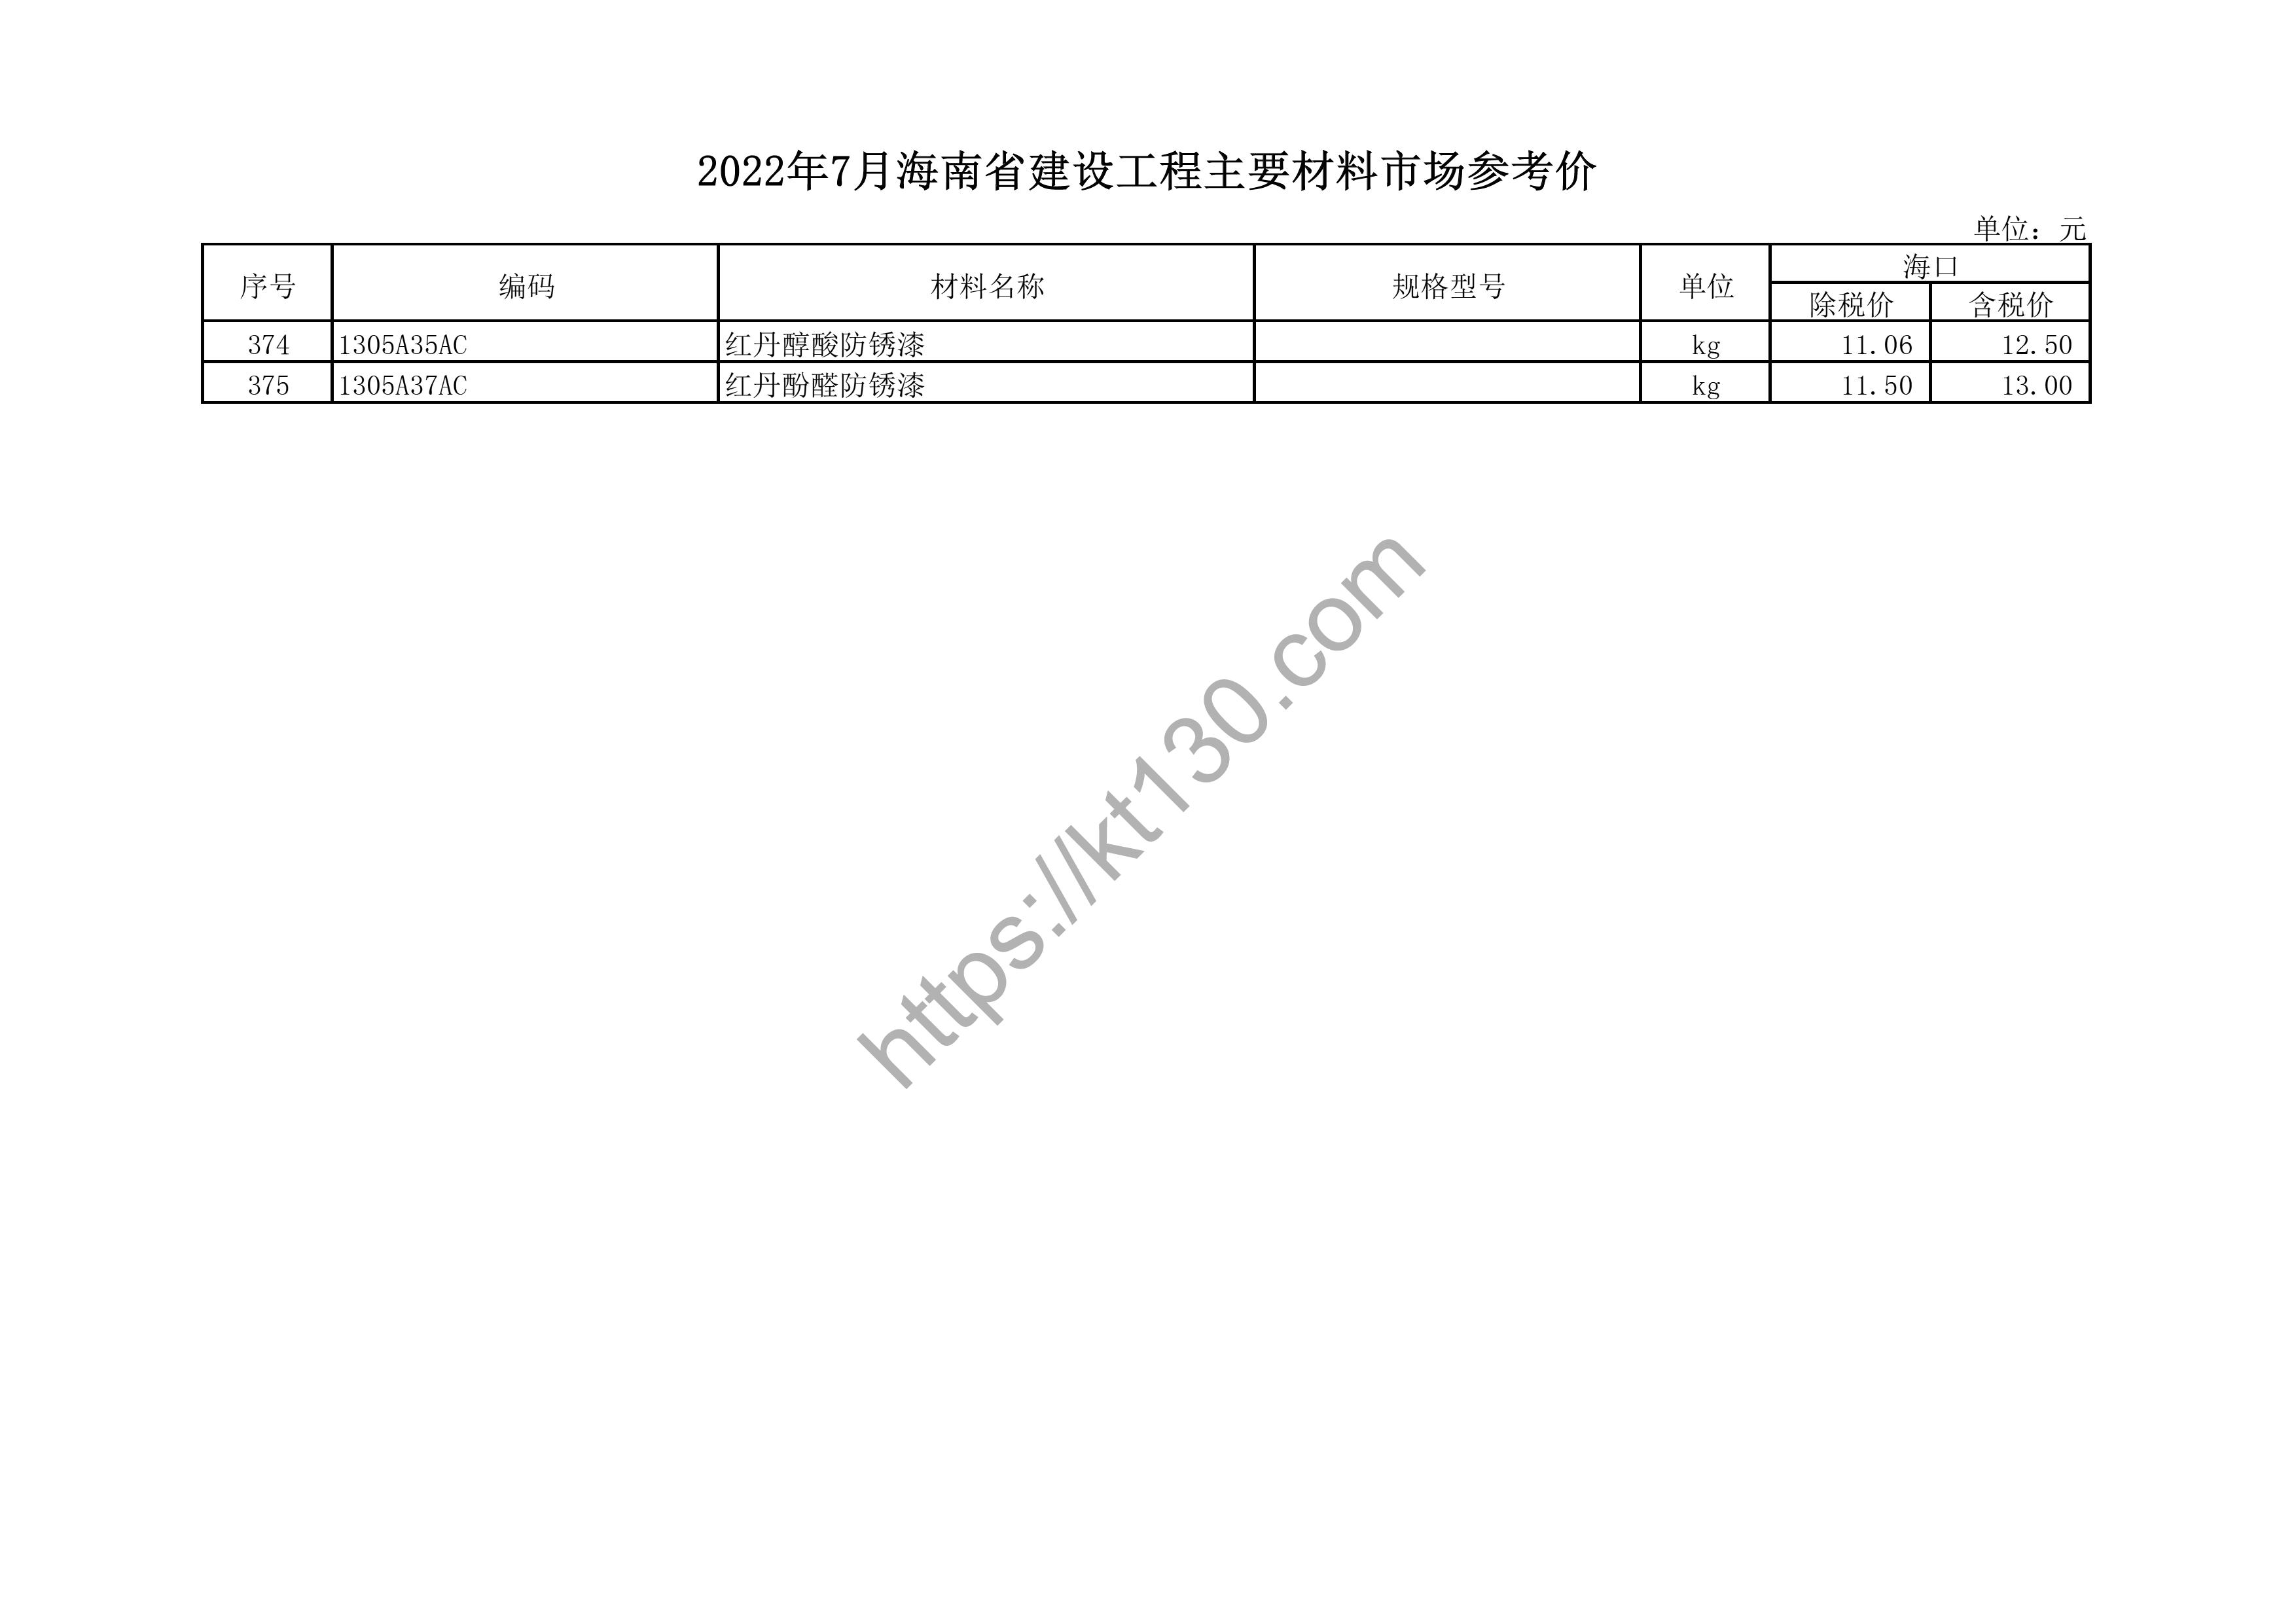 海南省2022年7月建筑材料价_平开门